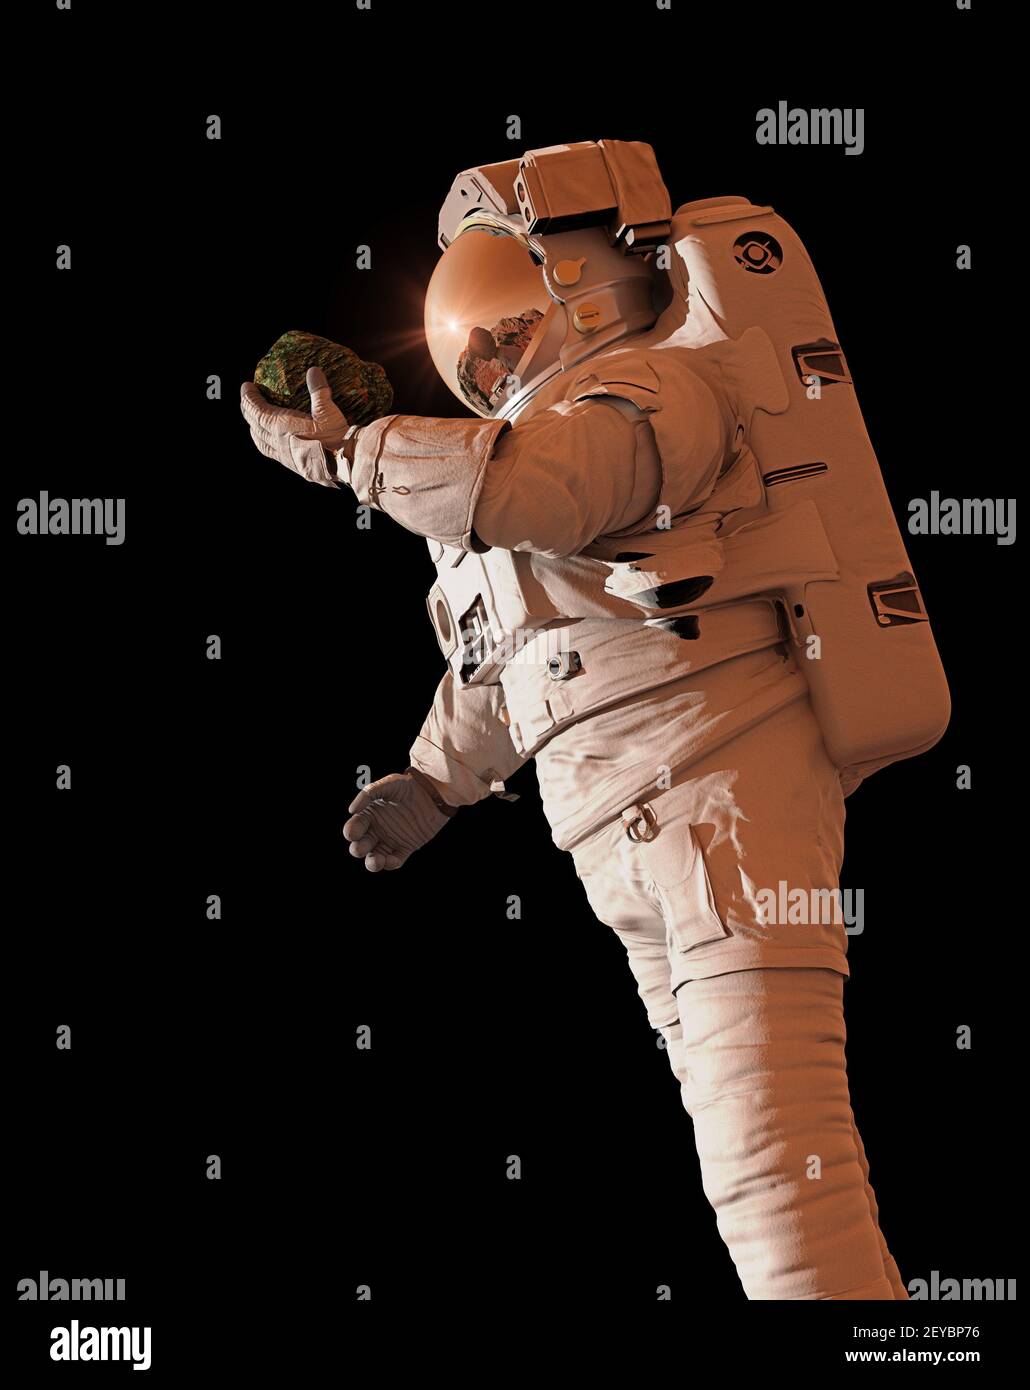 vita nello spazio, l'astronauta scopre la vita batterica sulla superficie di una roccia, isolata su sfondo nero Foto Stock